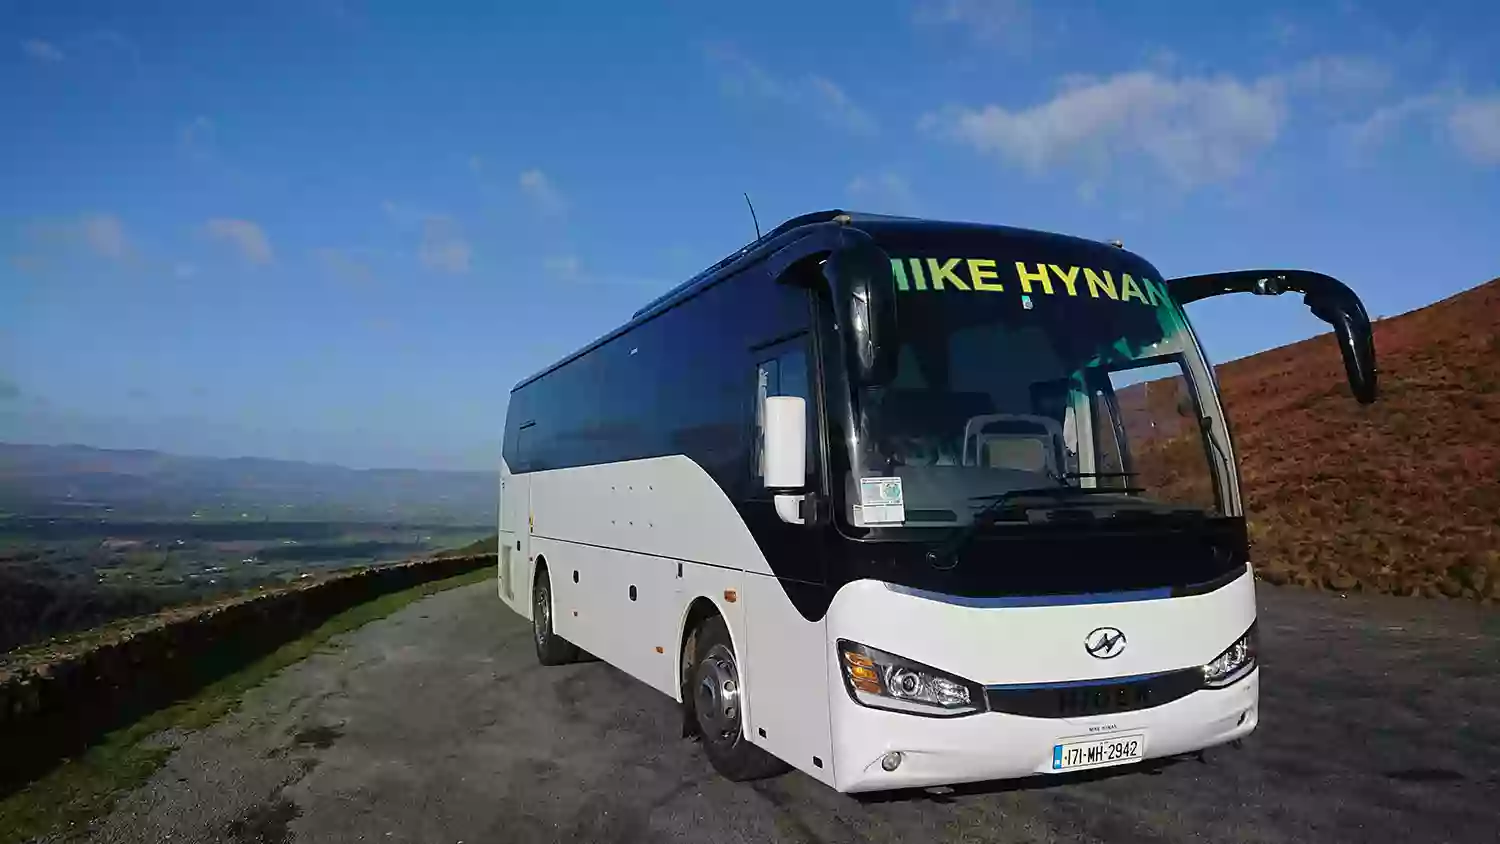 Hynan Travel